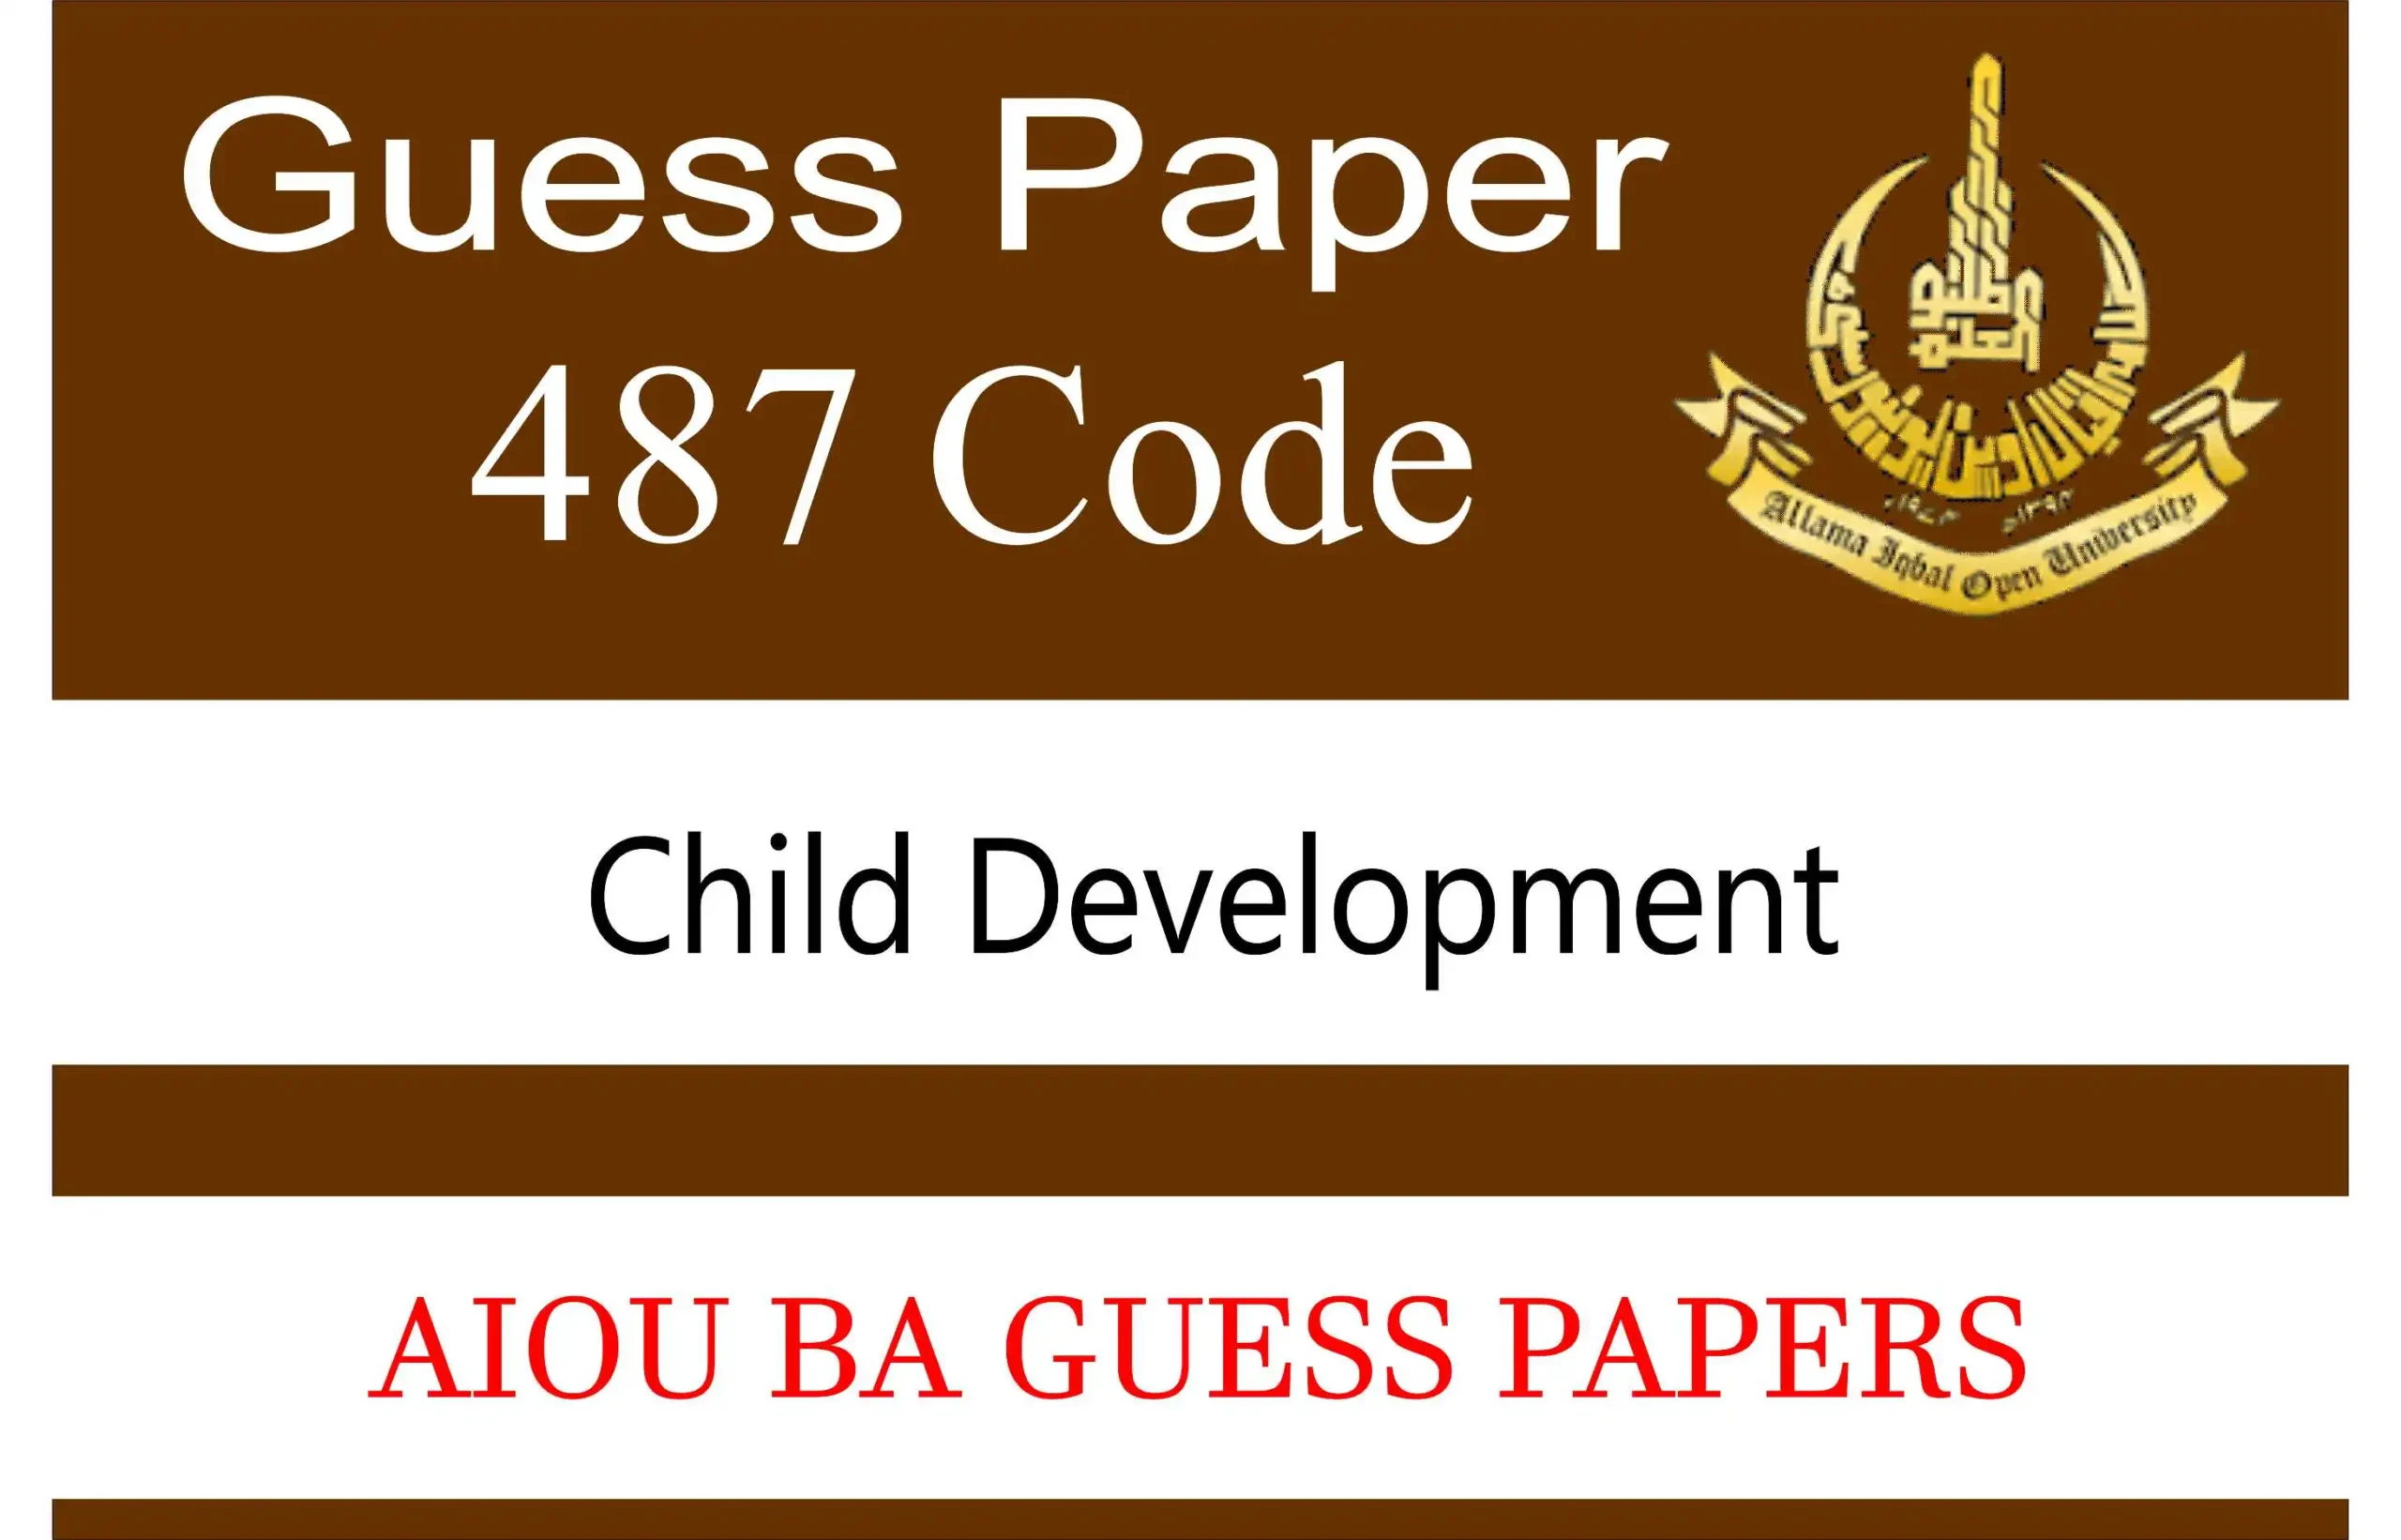 aiou 487 code guess paper